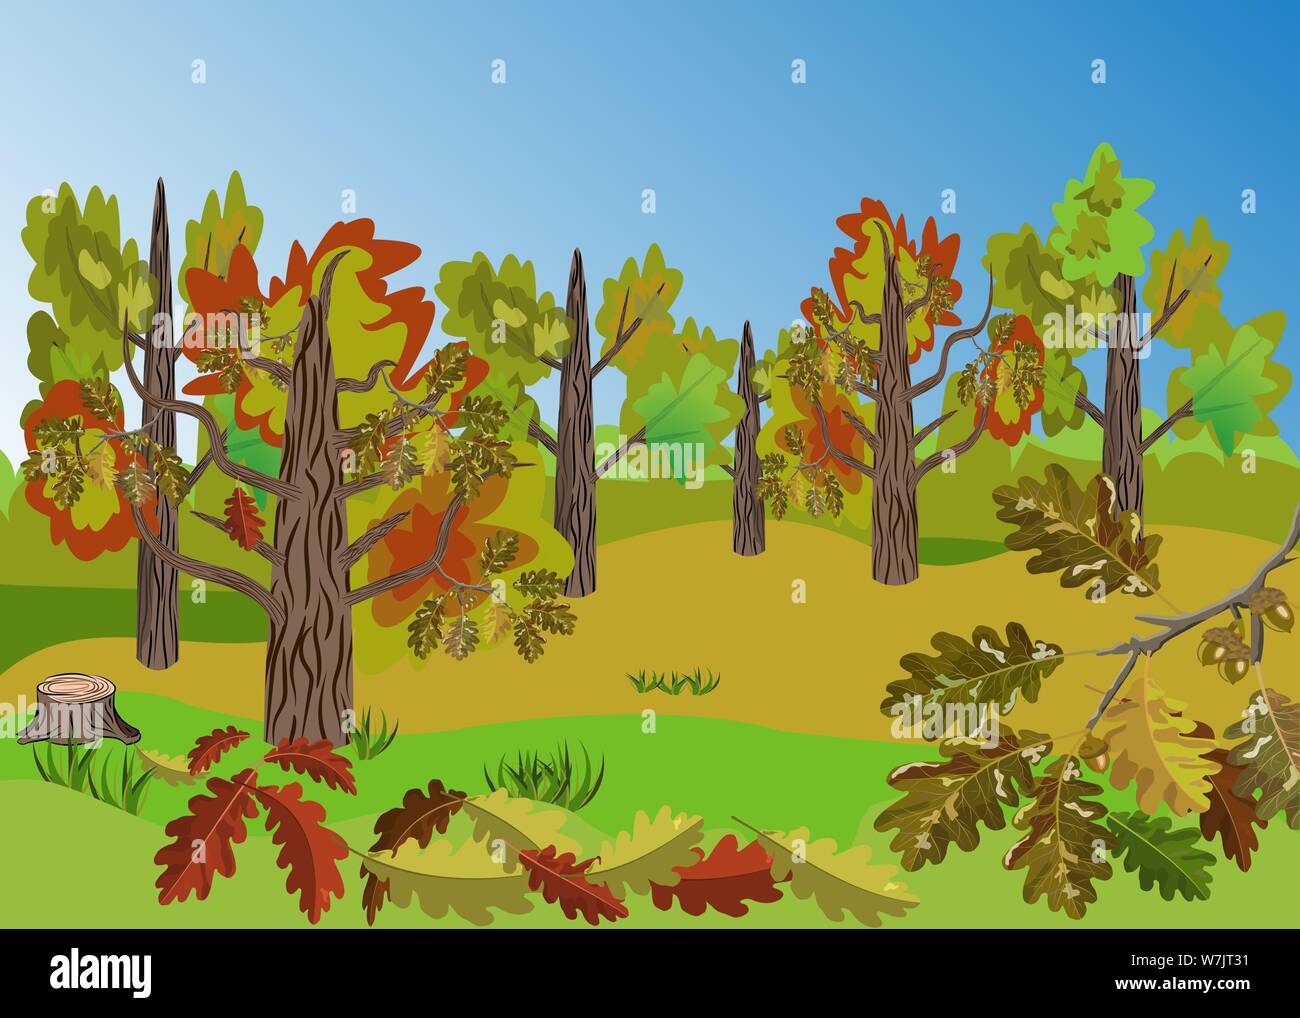 Herbst Oak Tree Grove Landschaft mit schönen bunten Eichenlaub folliage und hervorragende Ausblicke auf die Landschaft. Gut für Cartoon Requisiten, saisonale Dekoration Stock Vektor